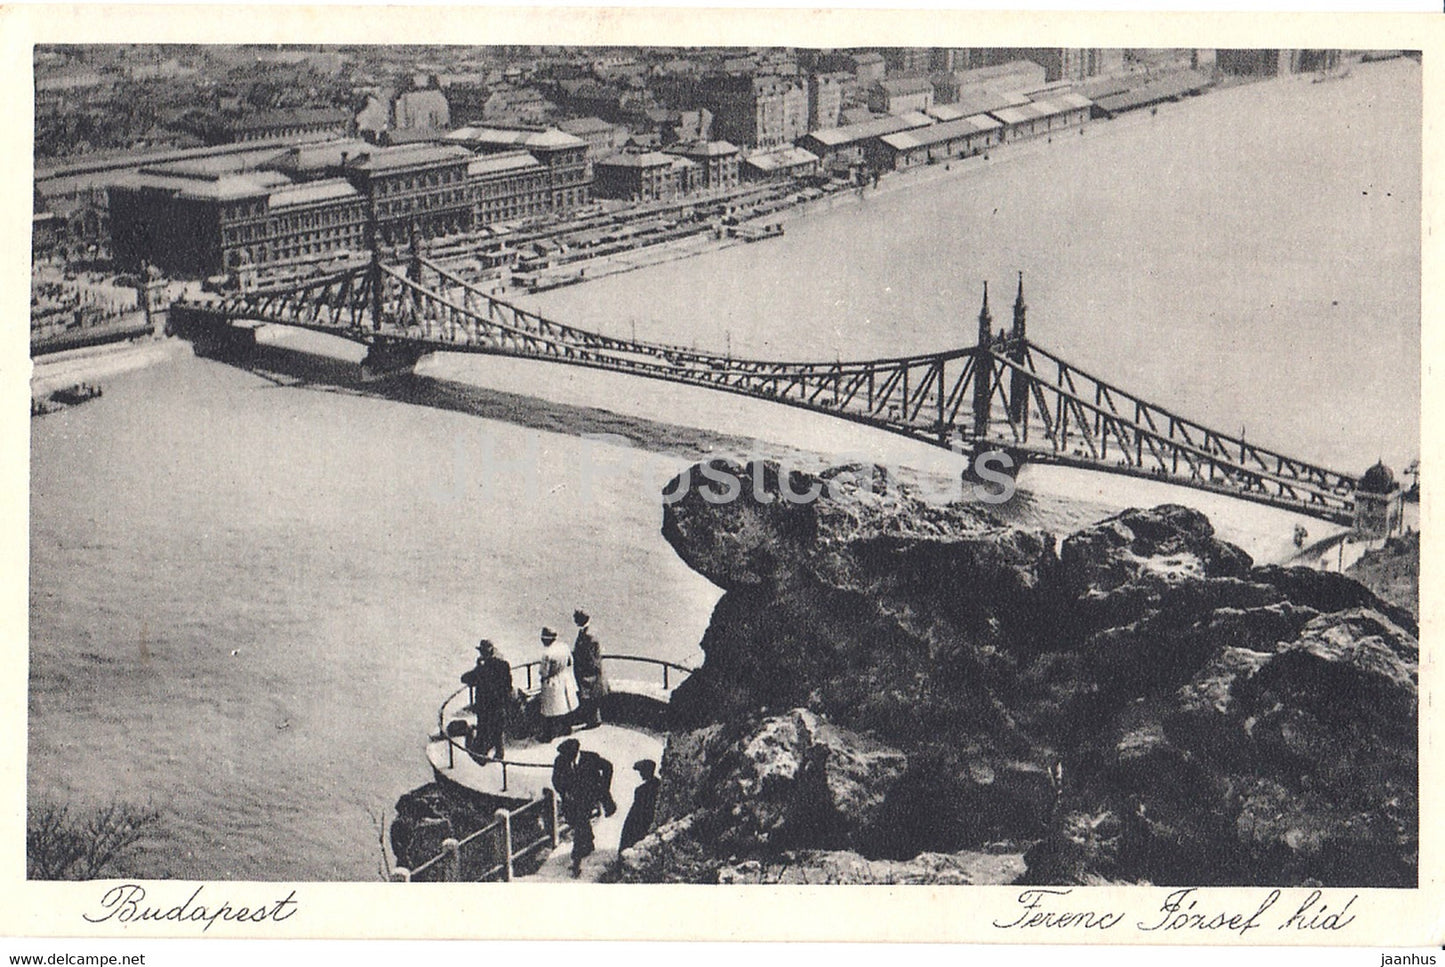 Budapest - Ferenc Jozsef hid - bridge - old postcard - 1933 - Hungary - unused - JH Postcards